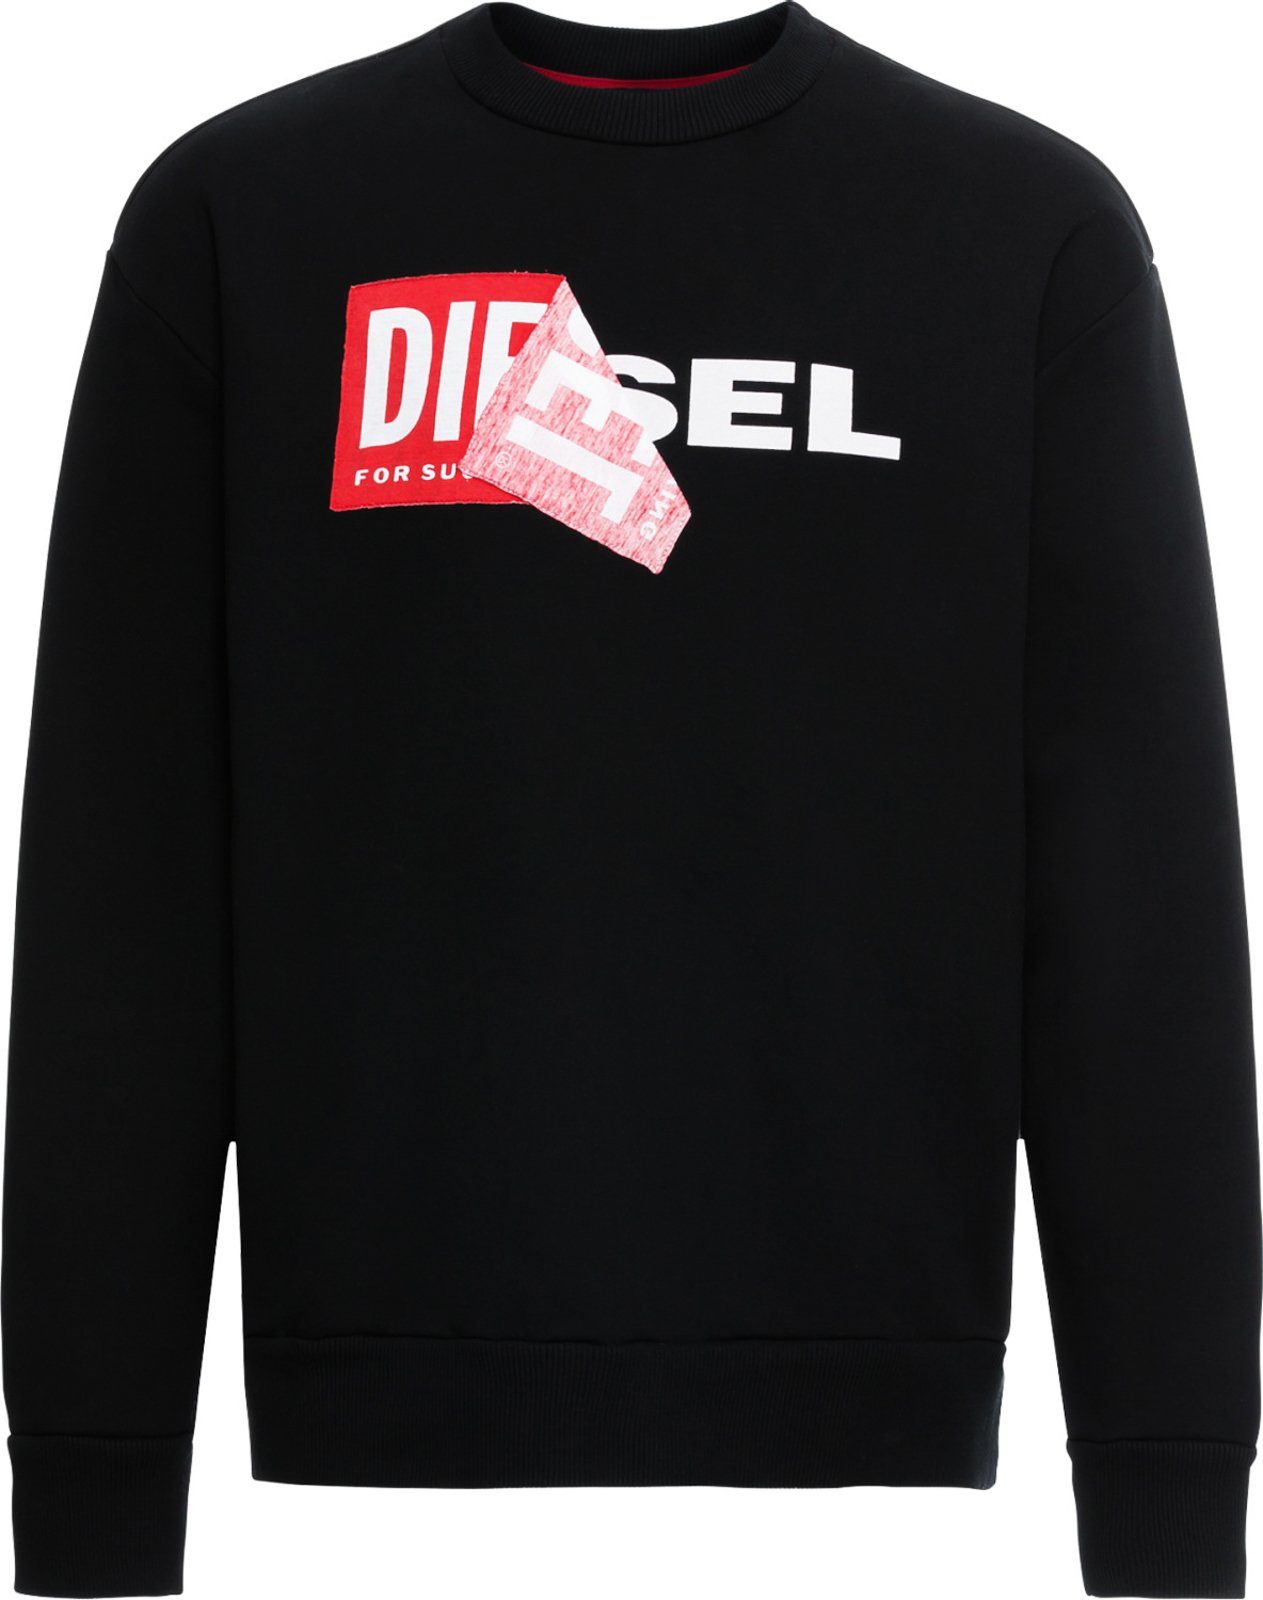 Diesel Sweatshirt Oversize Pullover S-SAMY Schwarz